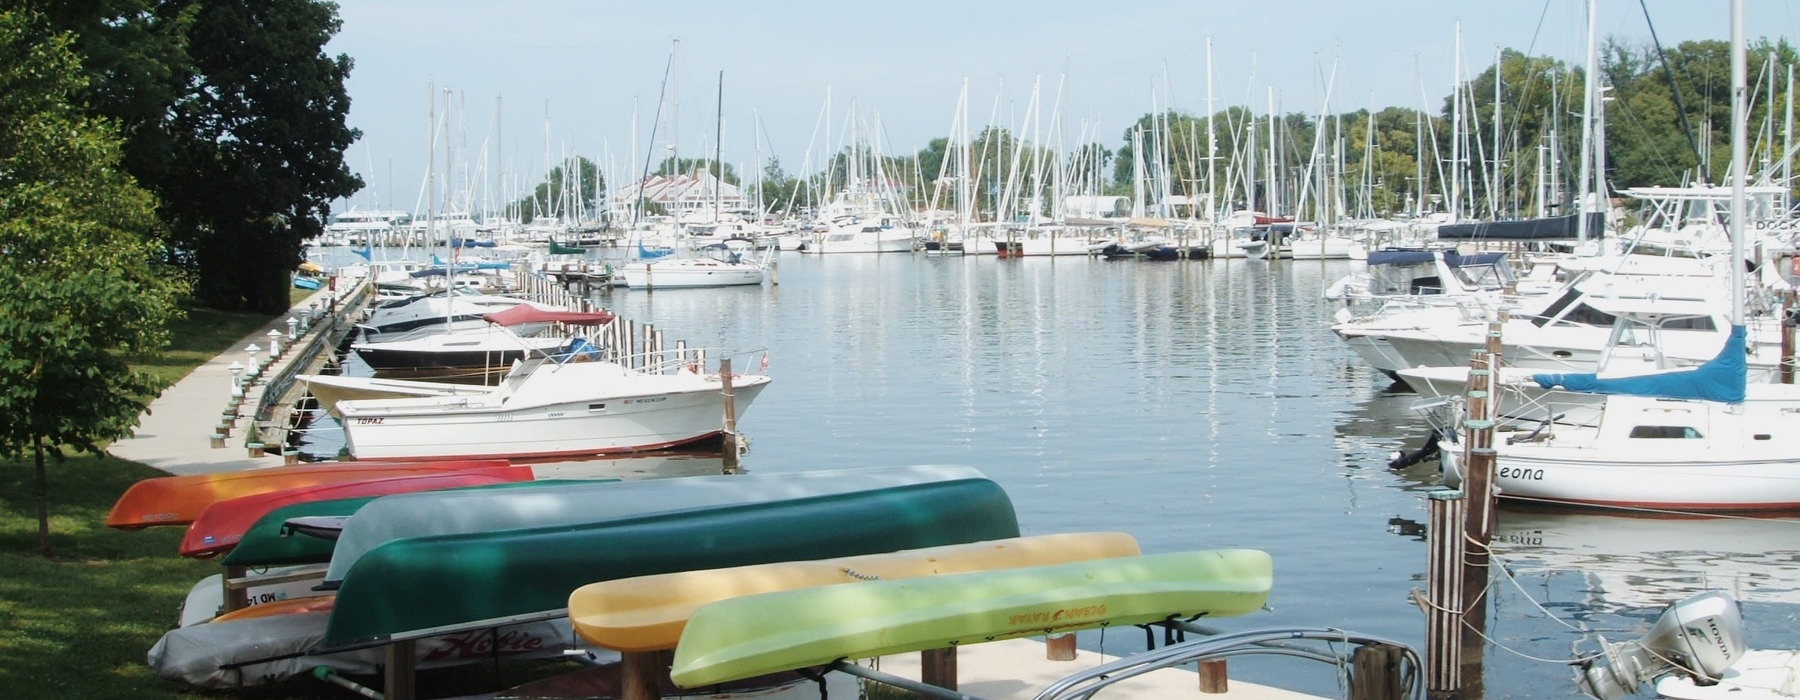 Marina with kayaks and sailing boats.